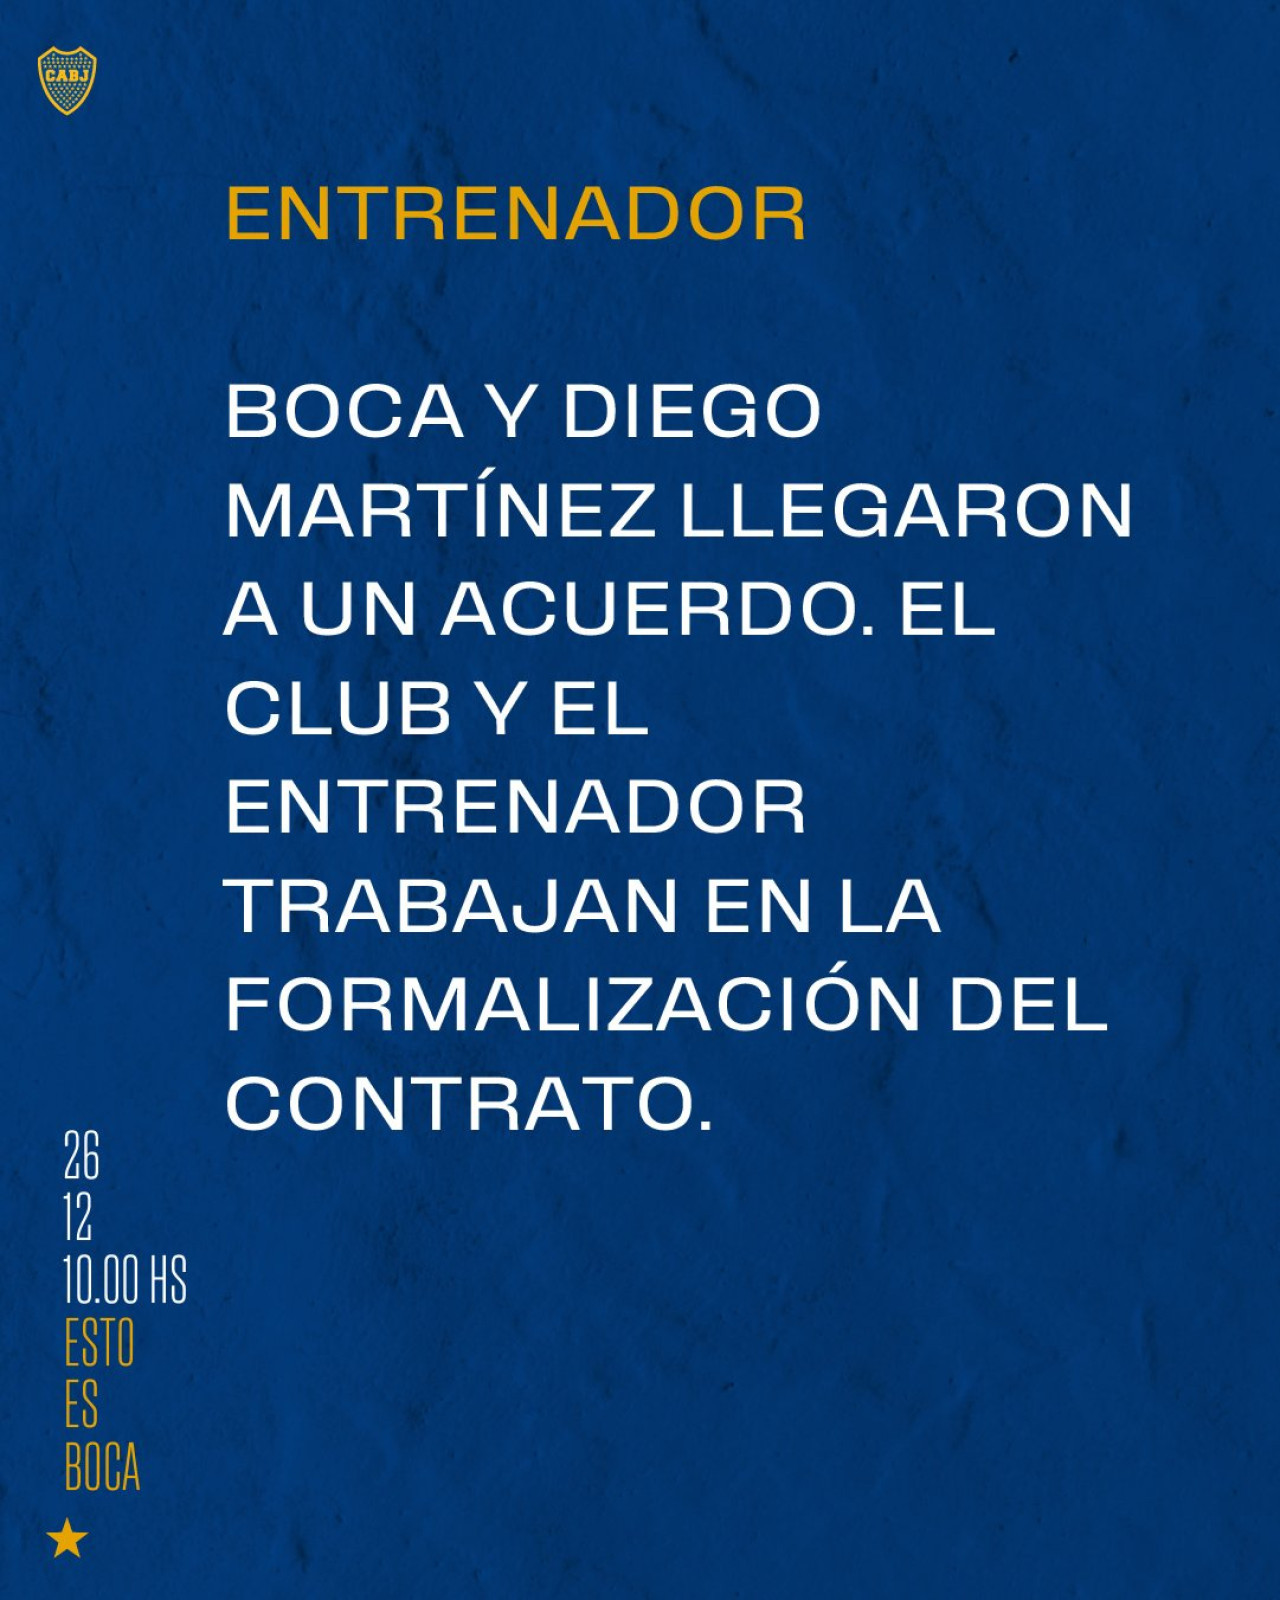 Diego Martínez es el nuevo entrenador de Boca. Foto: Twitter.